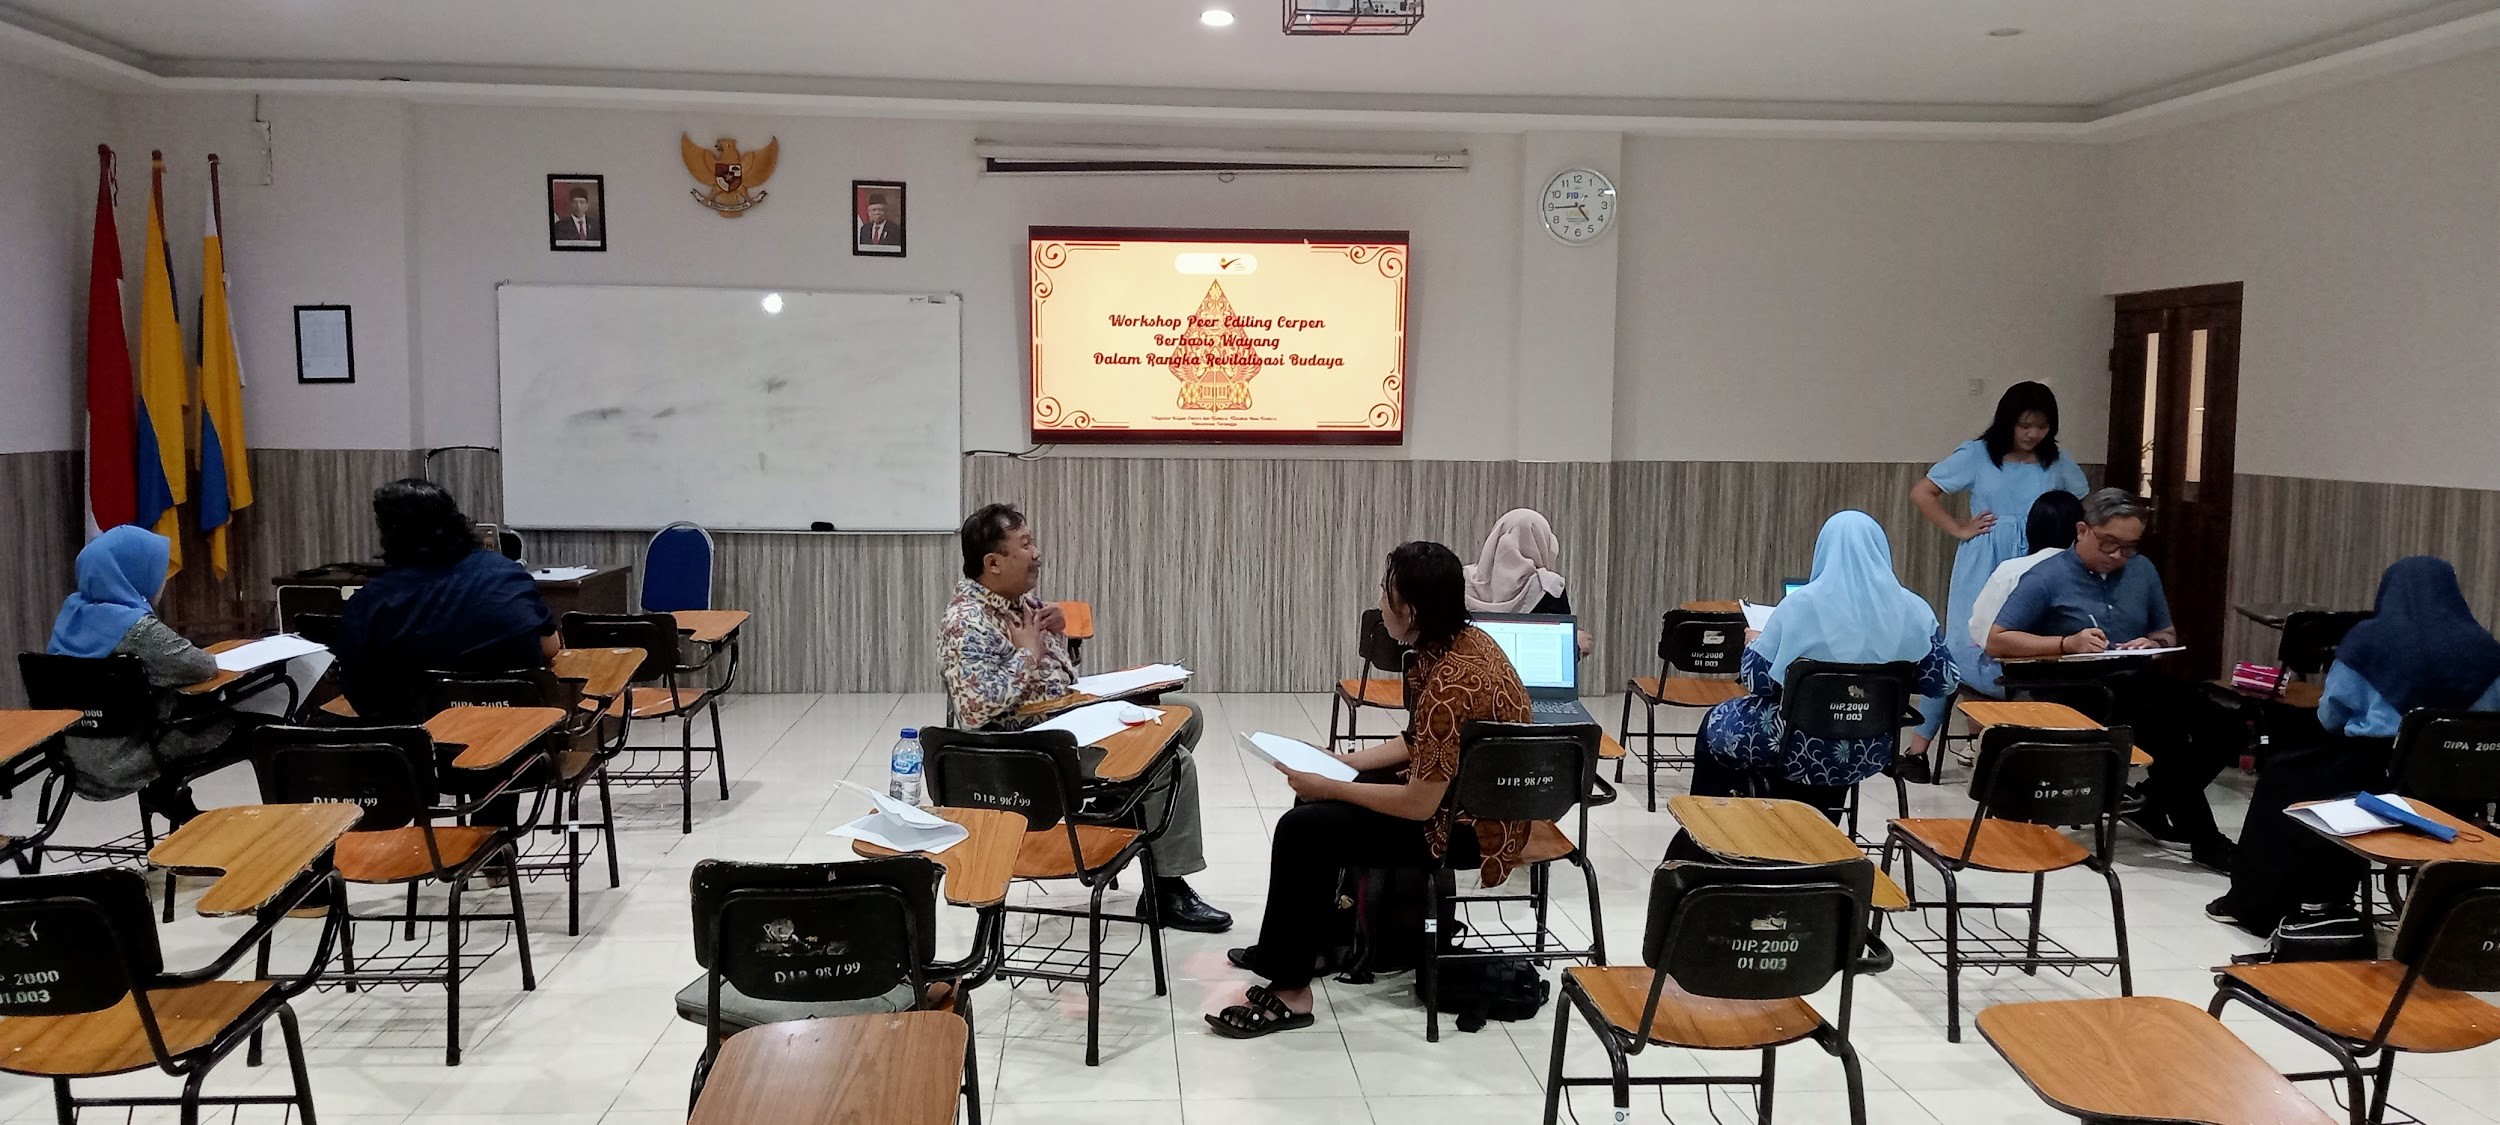 FIB UNAIR and Wayang Sarip Literary Community Hold Peer Editing Workshop